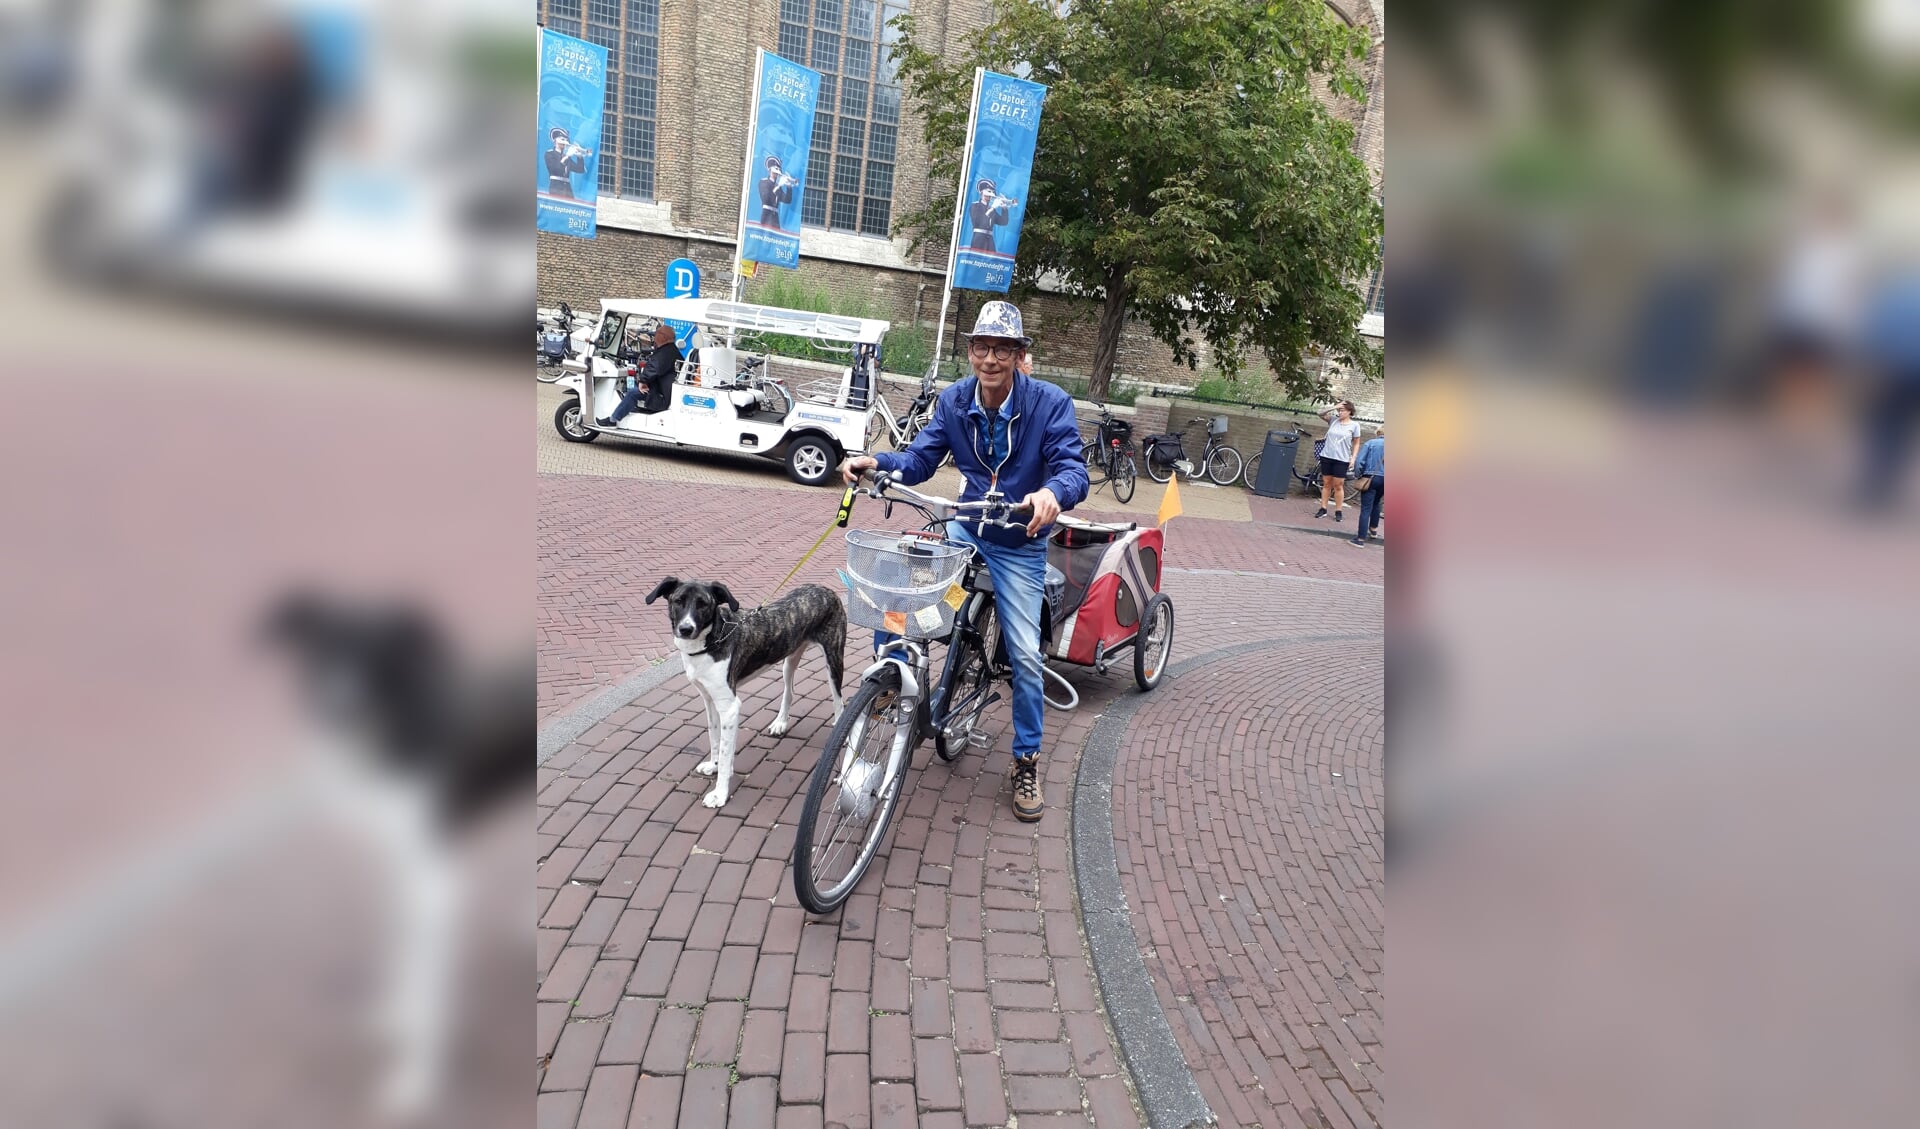 Ronald Kroon wil zich verdienstelijk maken als fietsambassadeur